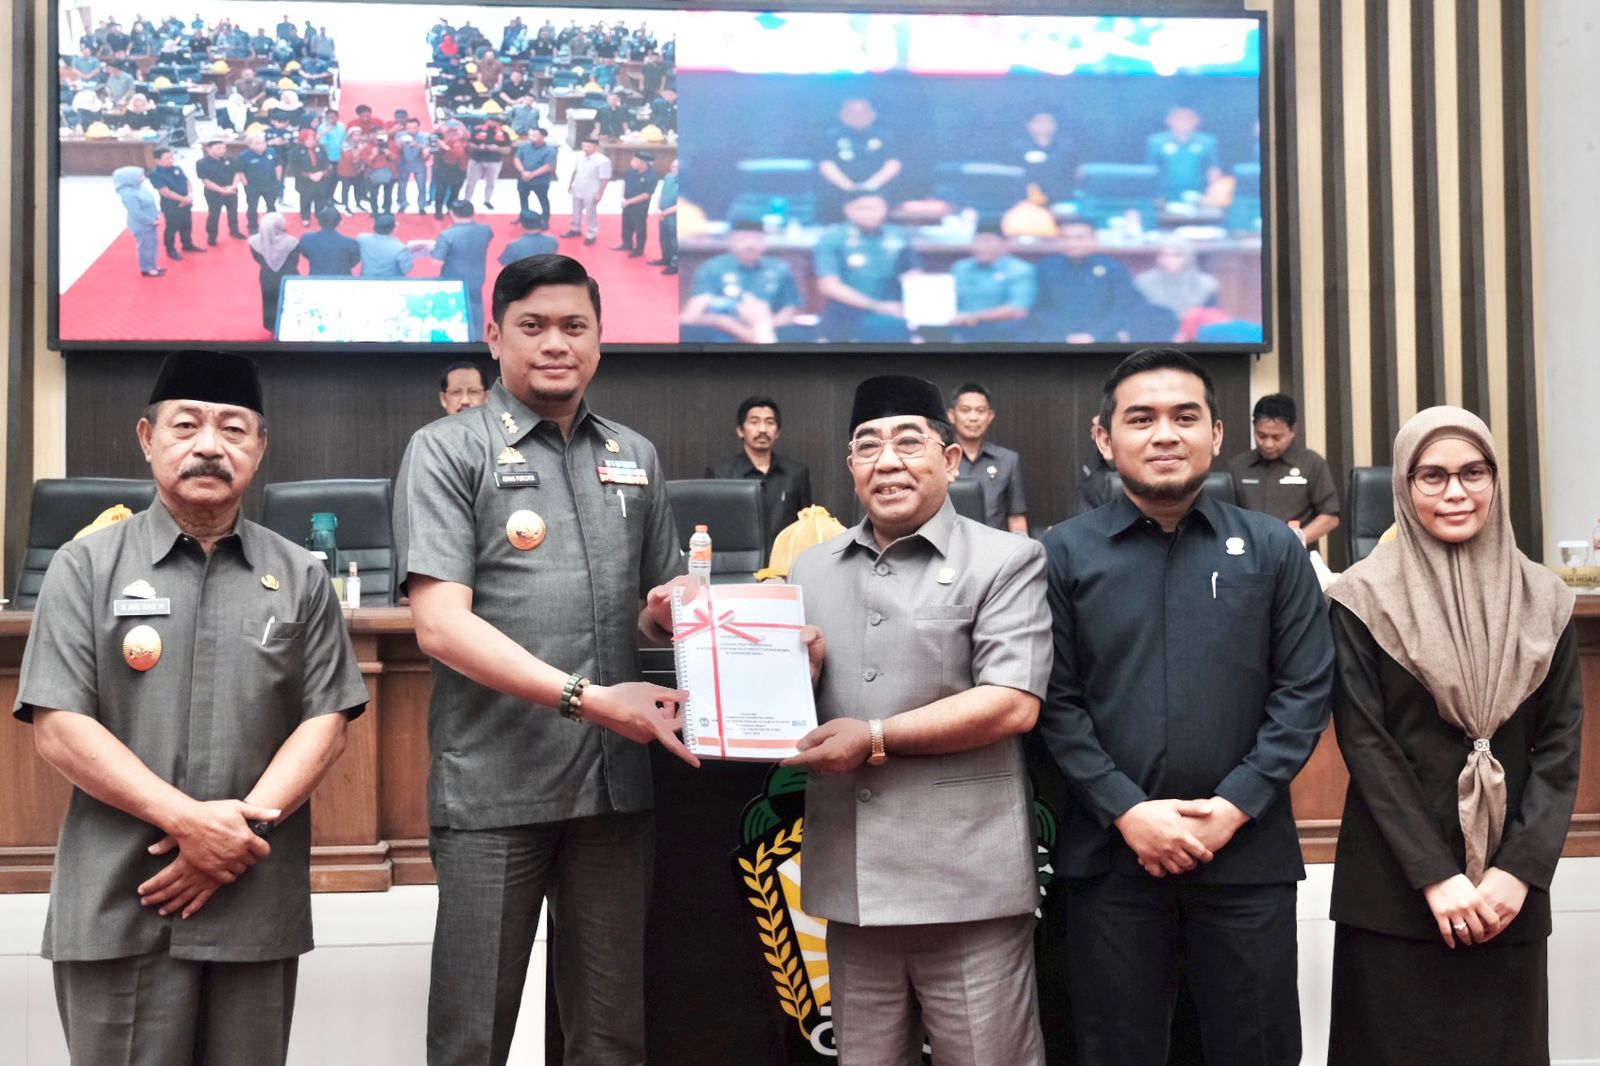 DPRD Gowa Sodorkan Ranperda Inisiatif Bantuan Hukum Bagi Masyarakat Kurang Mampu